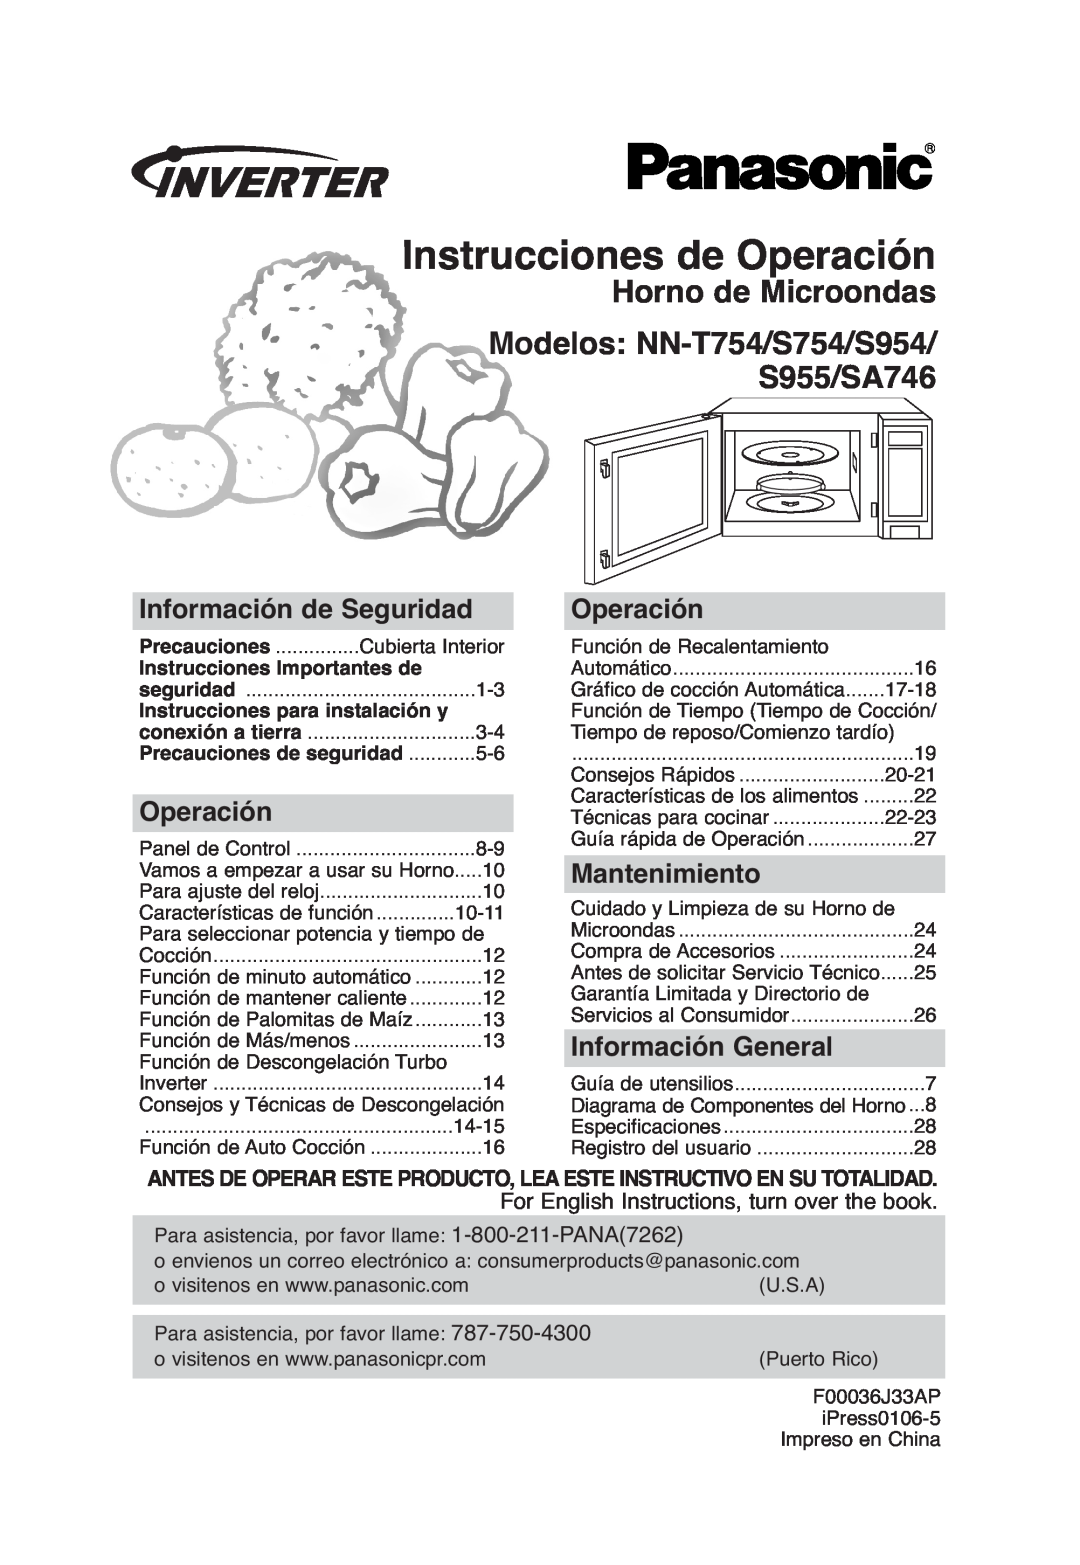 Panasonic Instrucciones de Operación, Horno de Microondas Modelos NN-T754/S754/S954, S955/SA746, Mantenimiento 